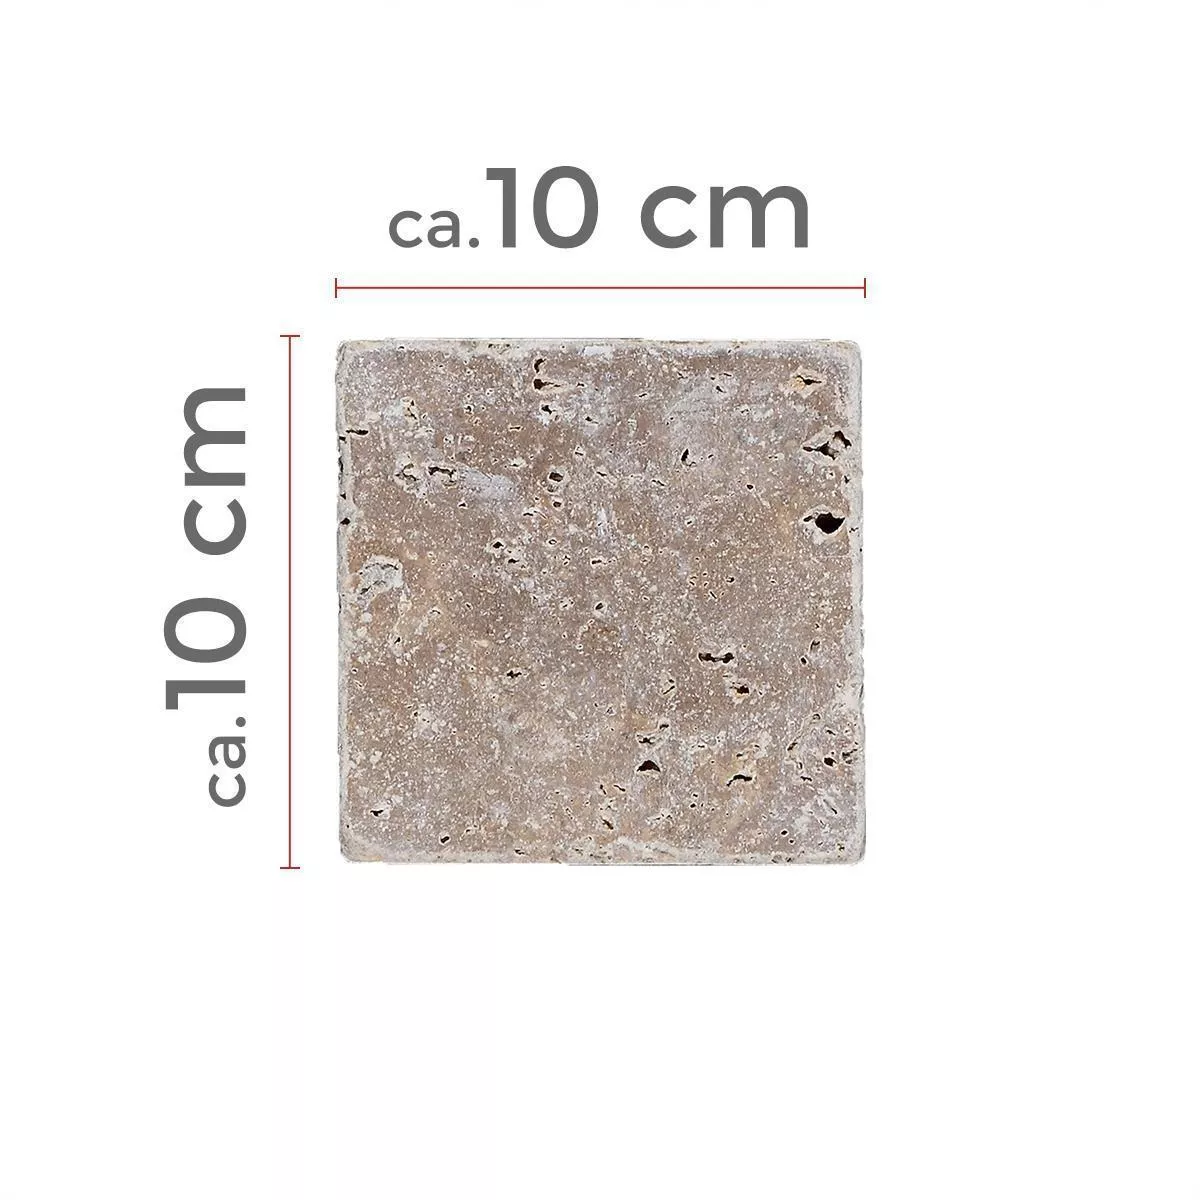 Πρότυπο Πλακάκια Aπό Φυσική Πέτρα Είδος Ασβεστόλιθου Patara Noce 10x10cm